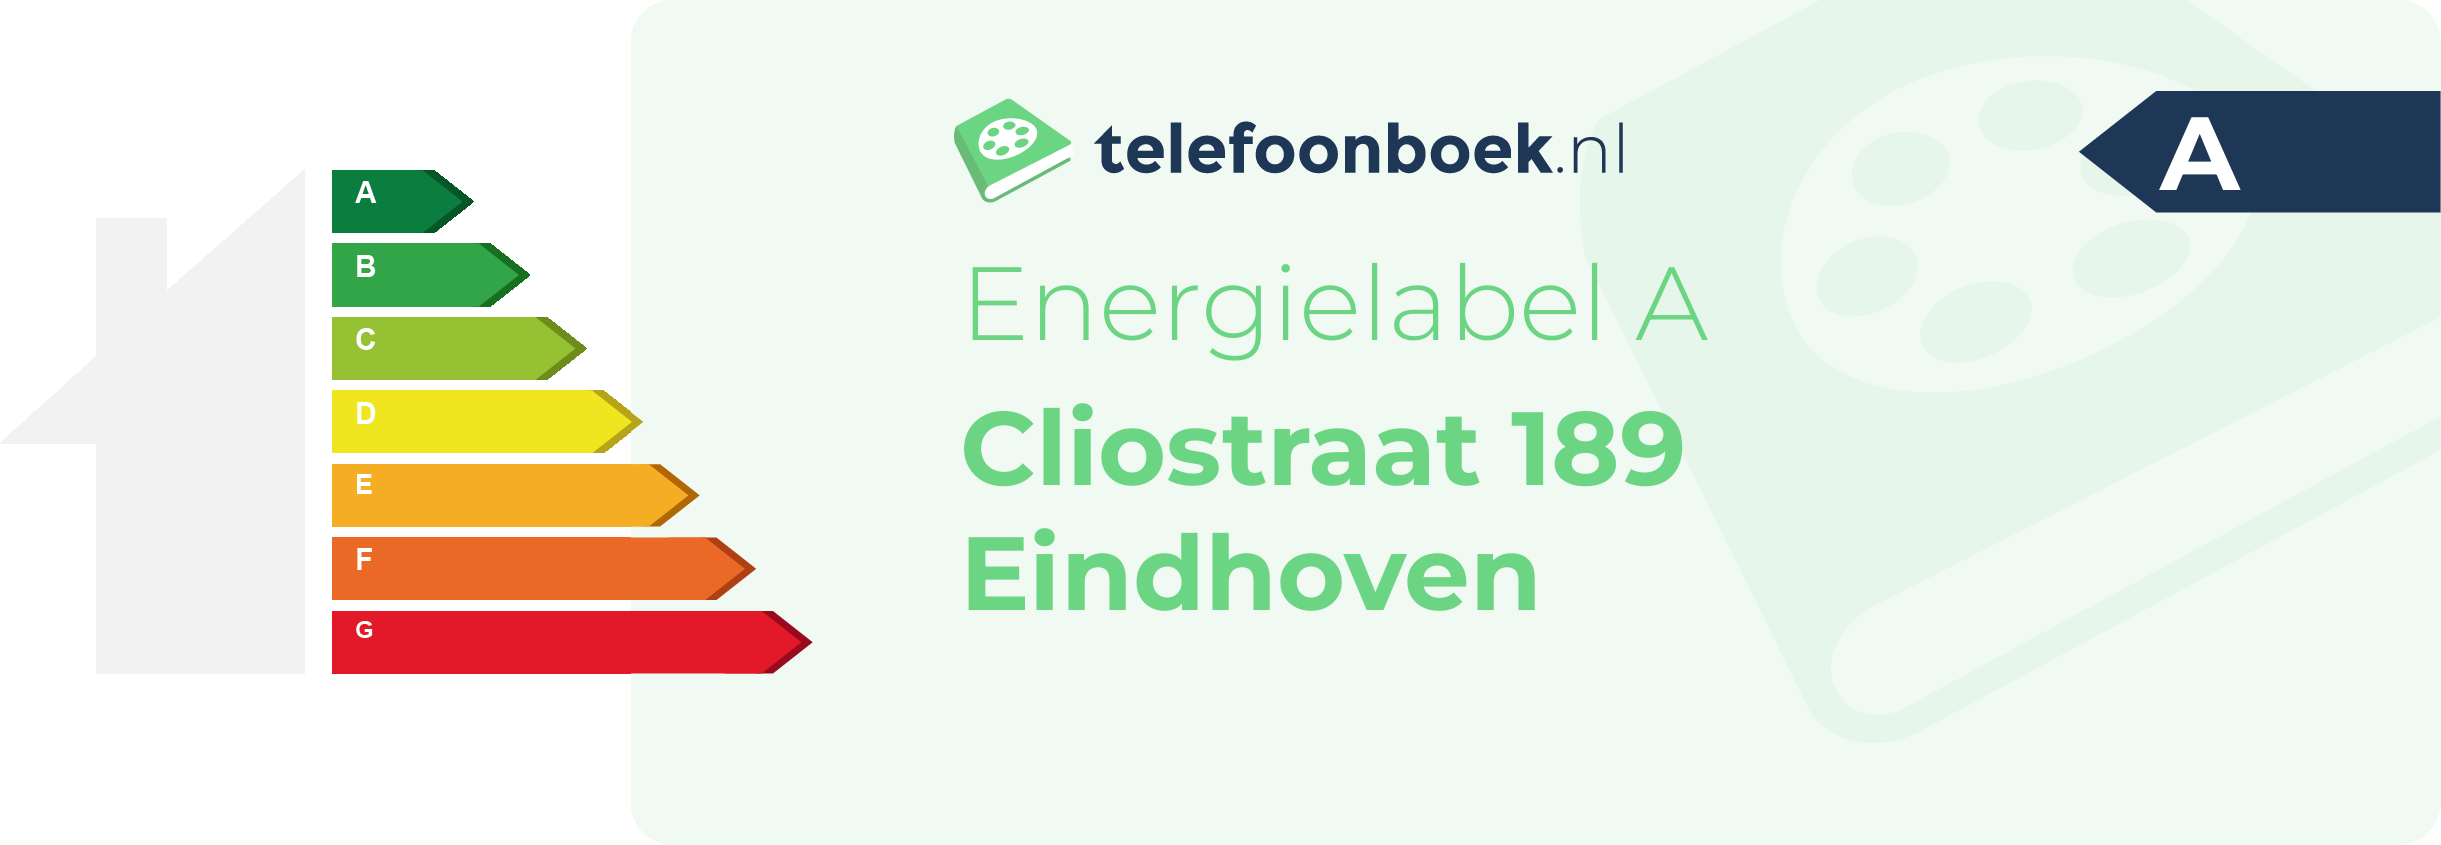 Energielabel Cliostraat 189 Eindhoven